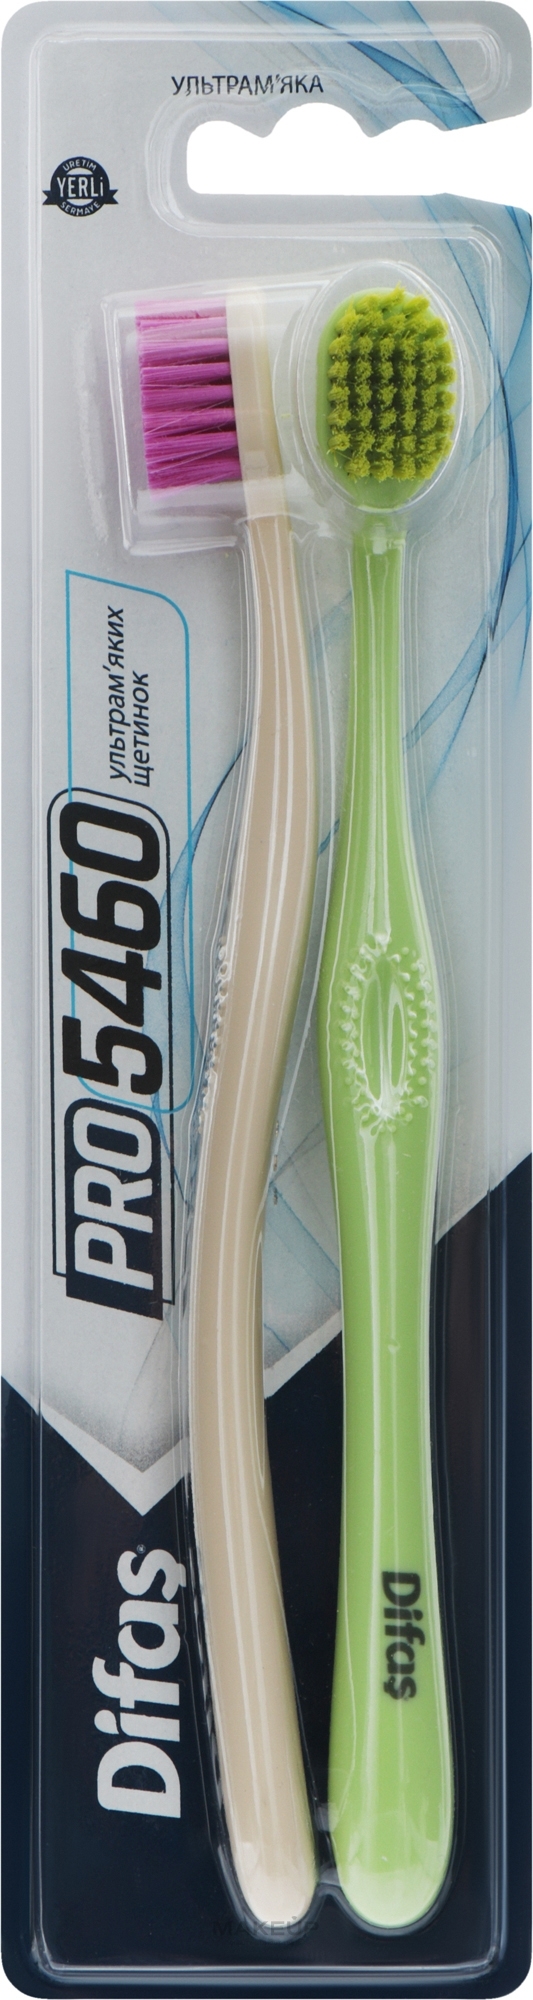 Набір зубних щіток "Ultra Soft", салатова + бежева - Difas PRO 5460 — фото 2шт